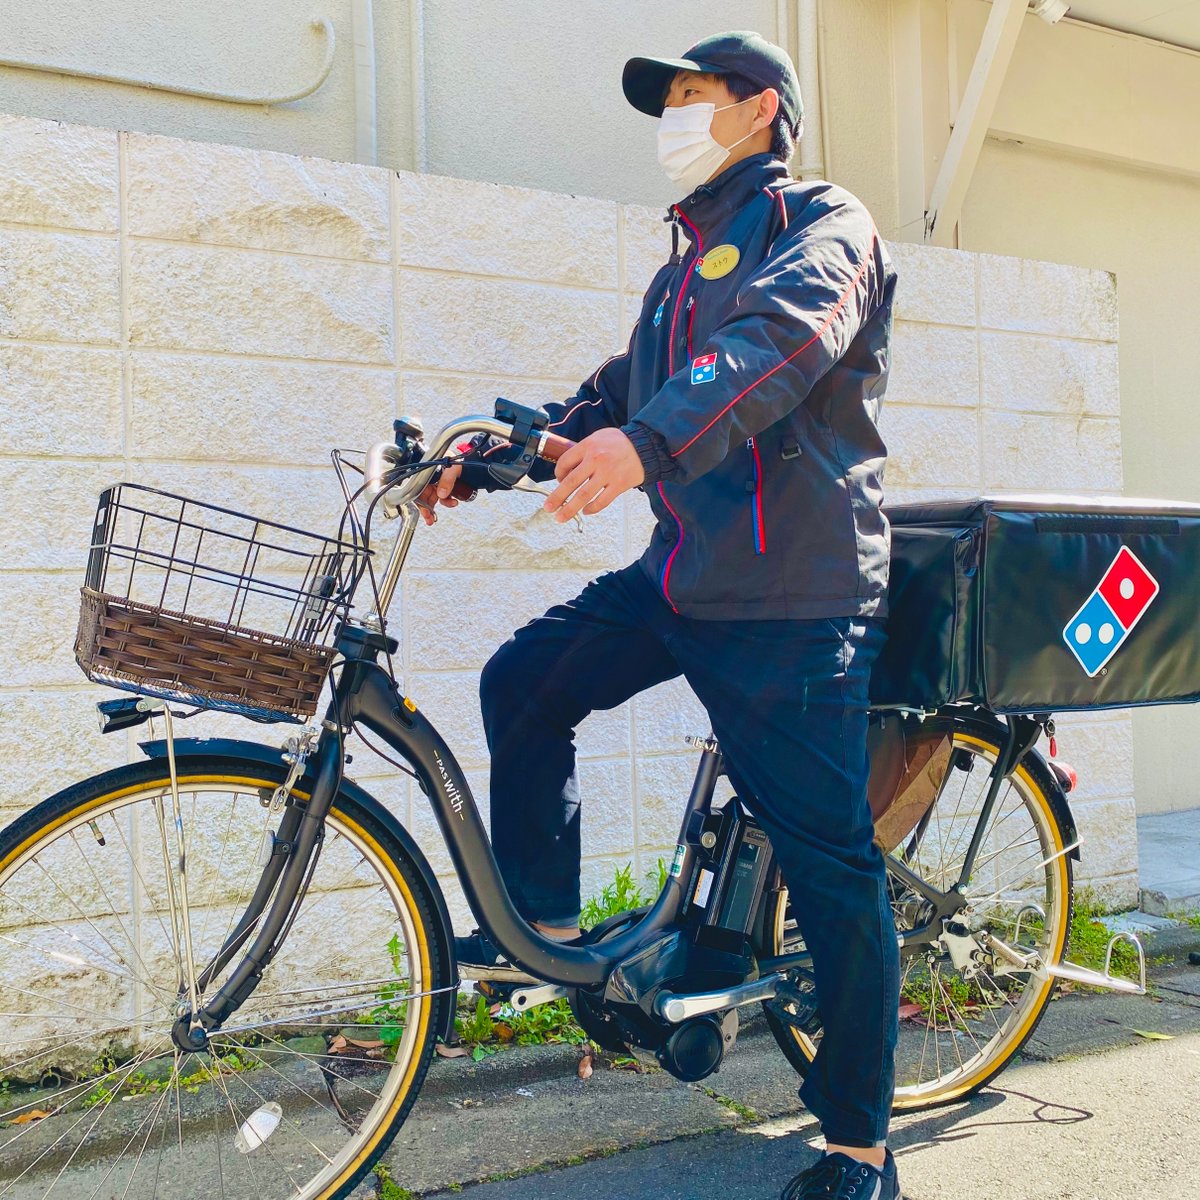 ドミノ ピザ בטוויטר ドミノのデリバリー 自転車でもできます バイクに乗れなくても 男性でも女性でも活躍中 興味のある方はお近くの店舗にお問い合わせください ドミノピザ デリバリー 自転車